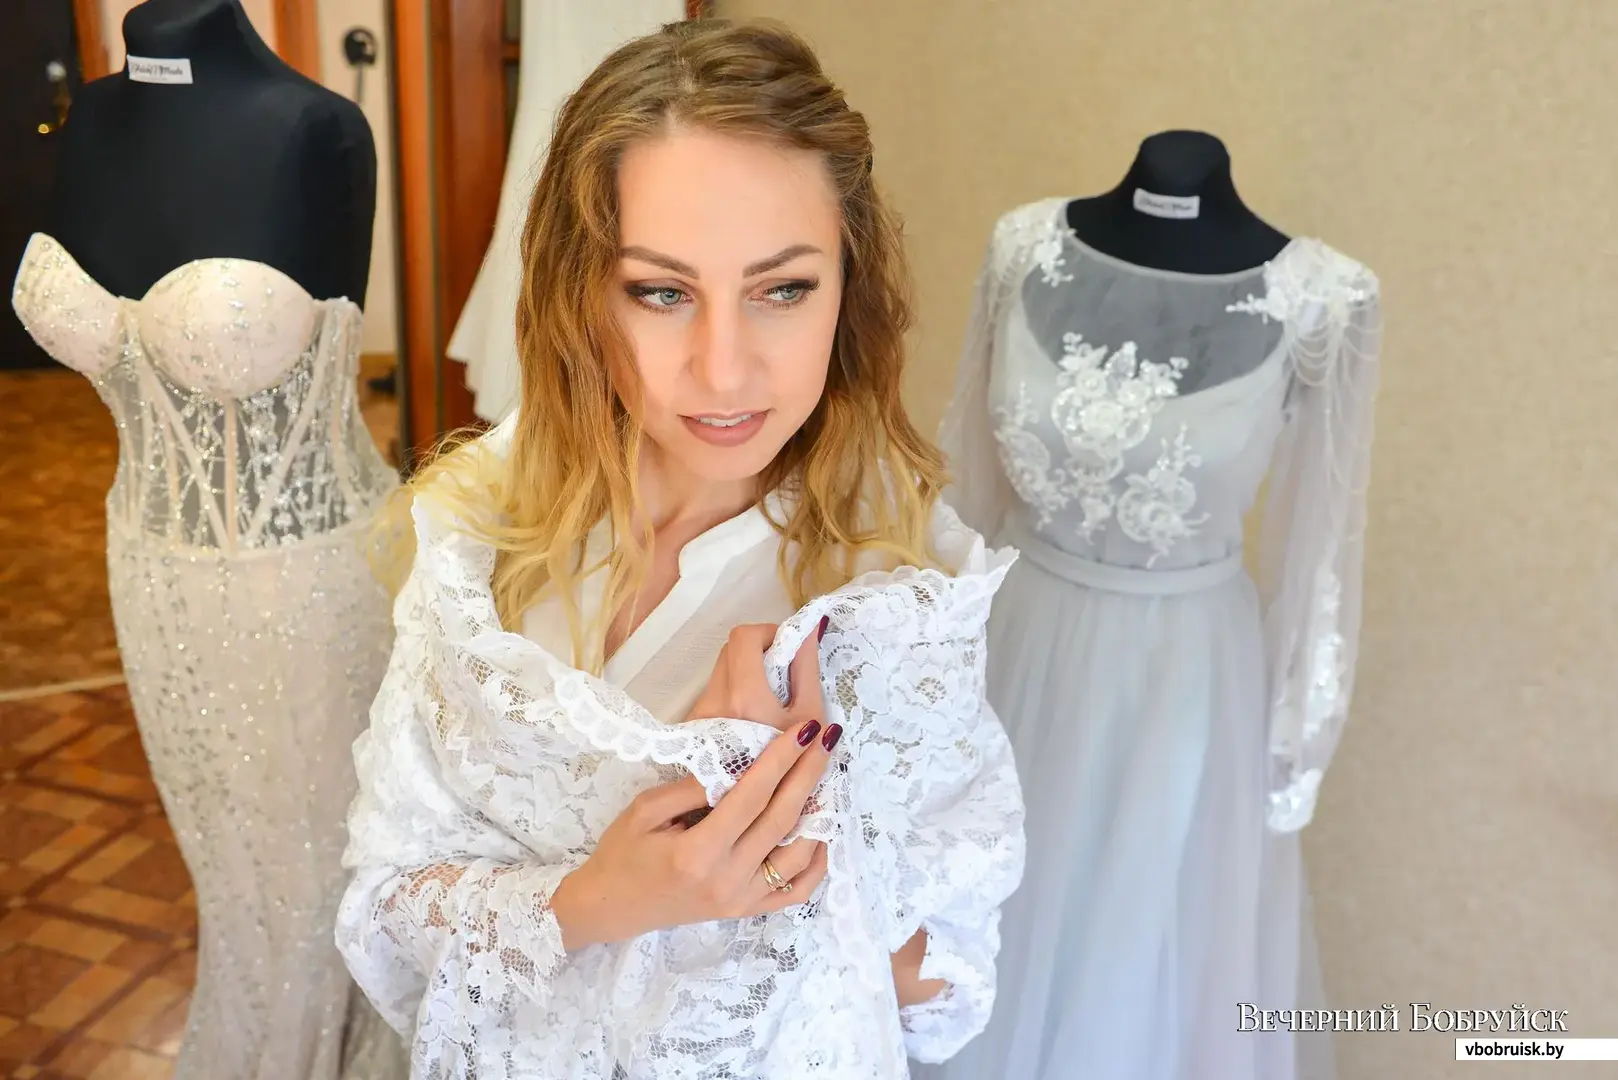 Модельер-конструктор Елена Мальгина шьет свадебные платья на заказ.